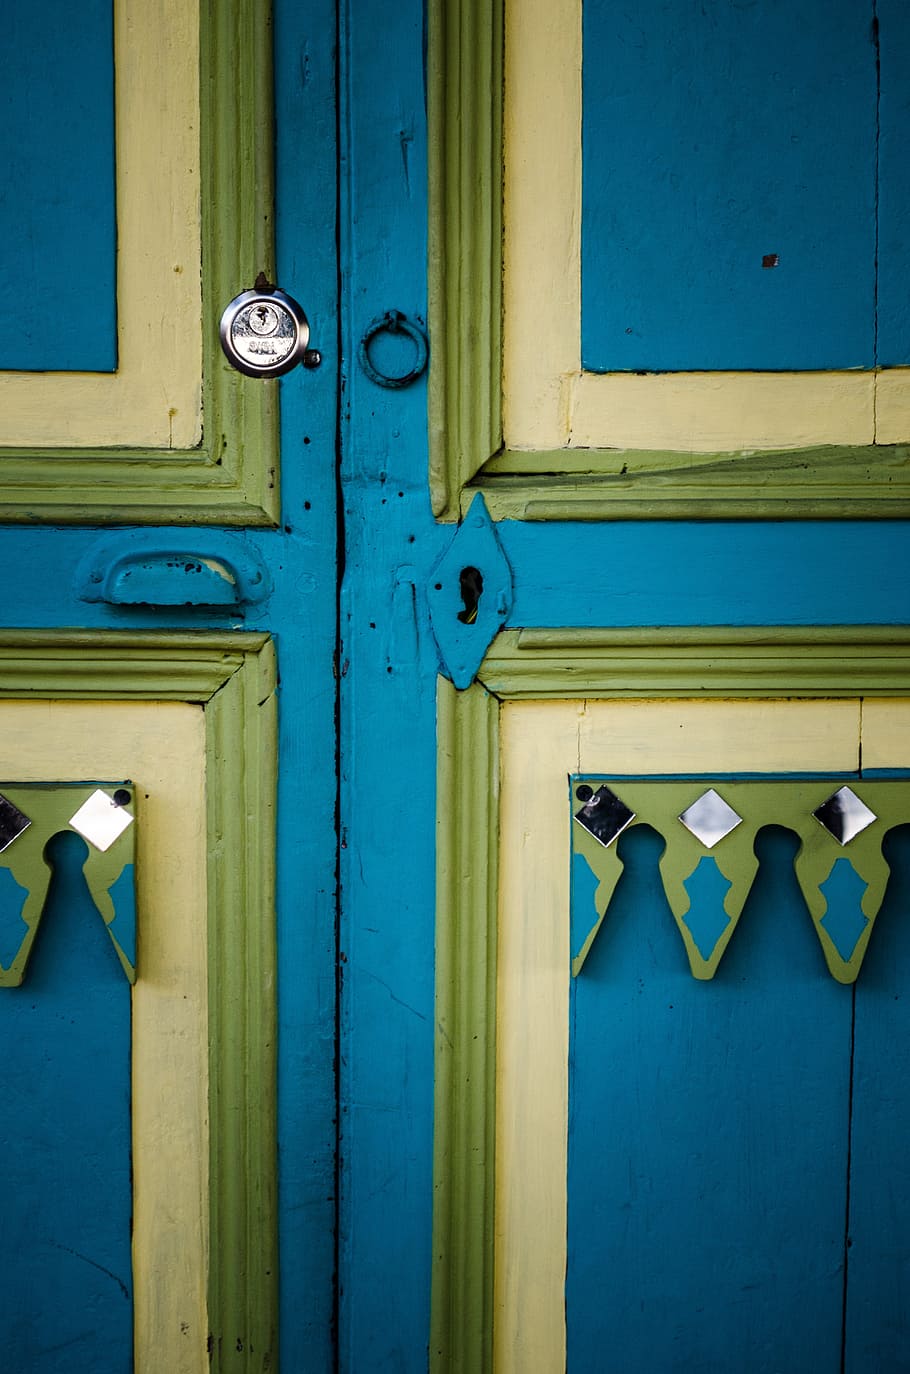 Door, Lock, Yellow, Rustic, Iron, blue, wood, keys, old door, worn